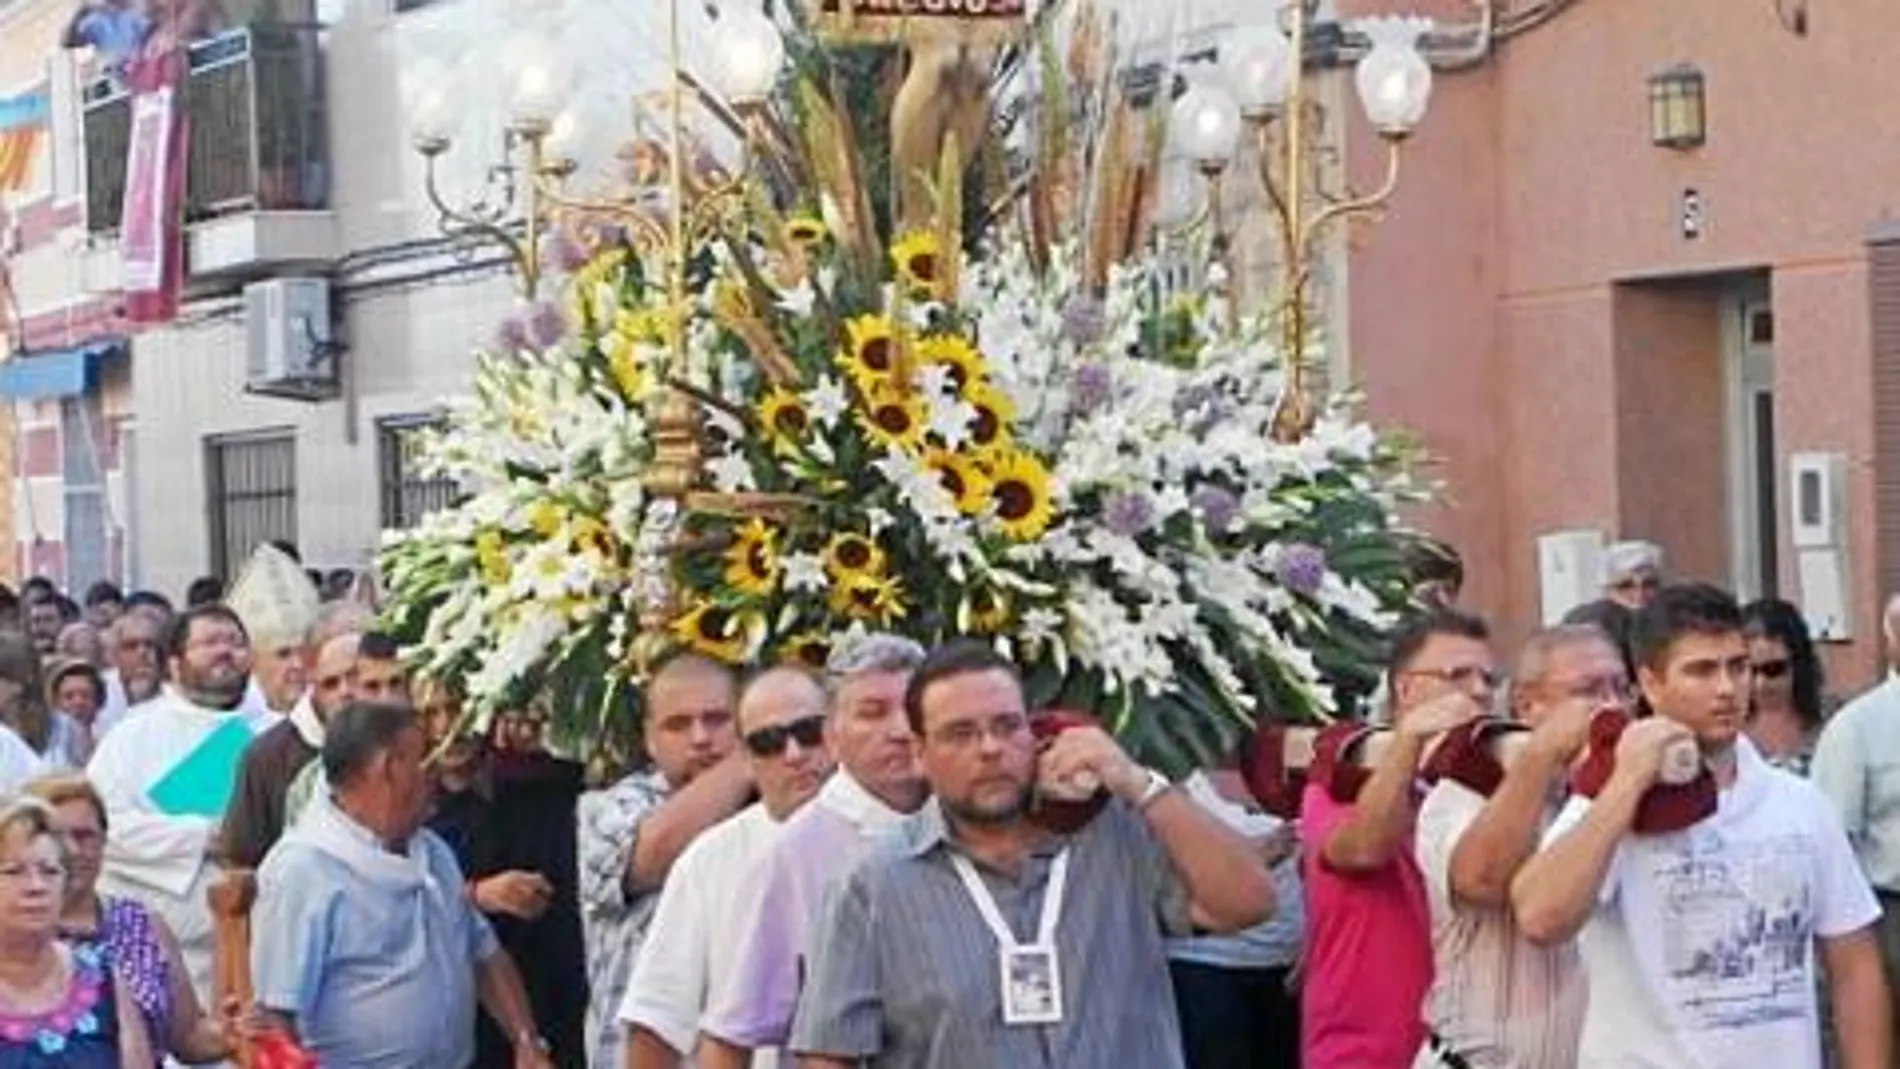 El arzobispo de Valencia asistió a la romería de El Palmar